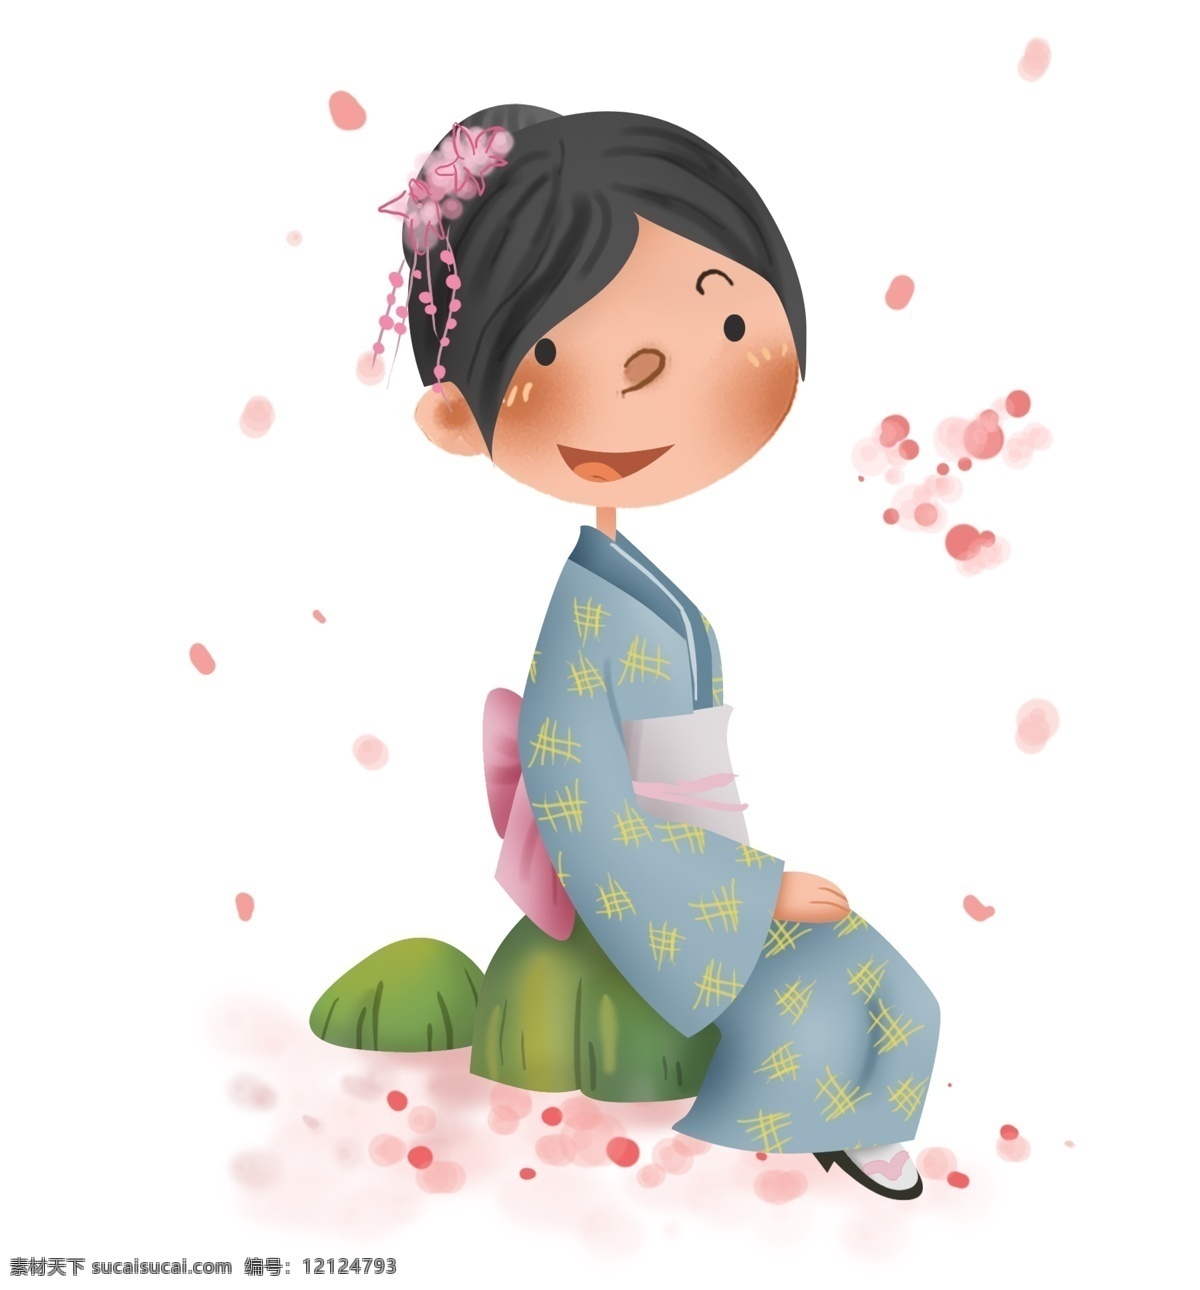 日本旅游 和服 女孩 日本 日本人 人本女孩 樱花 落樱 赏花 赏樱花 日本樱花 和风 日本少女